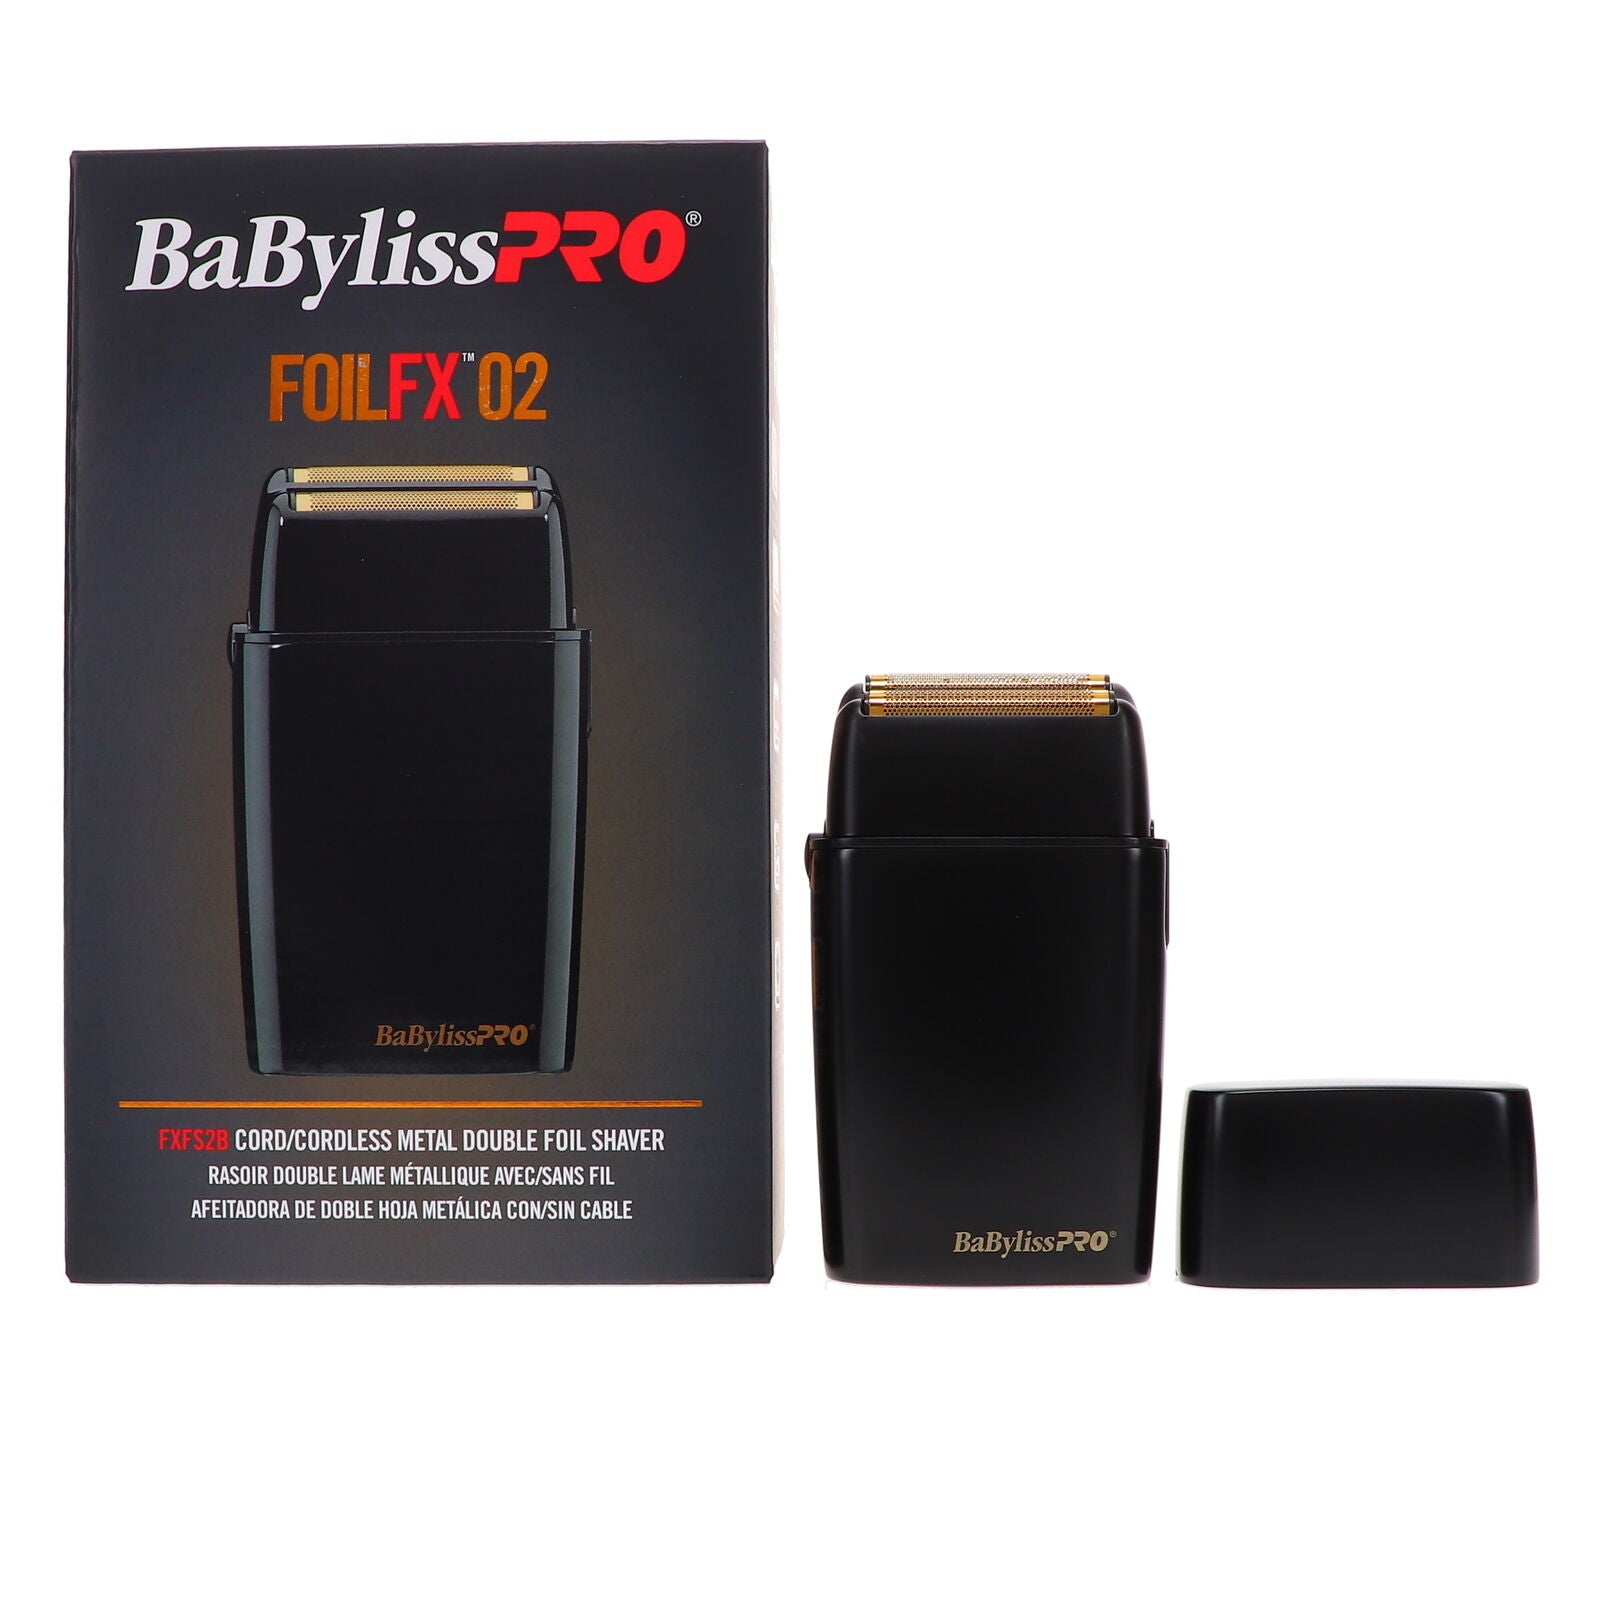 BaByliss PRO Black FX Cordless Metal Double Foil Shaver (FXFS2B)